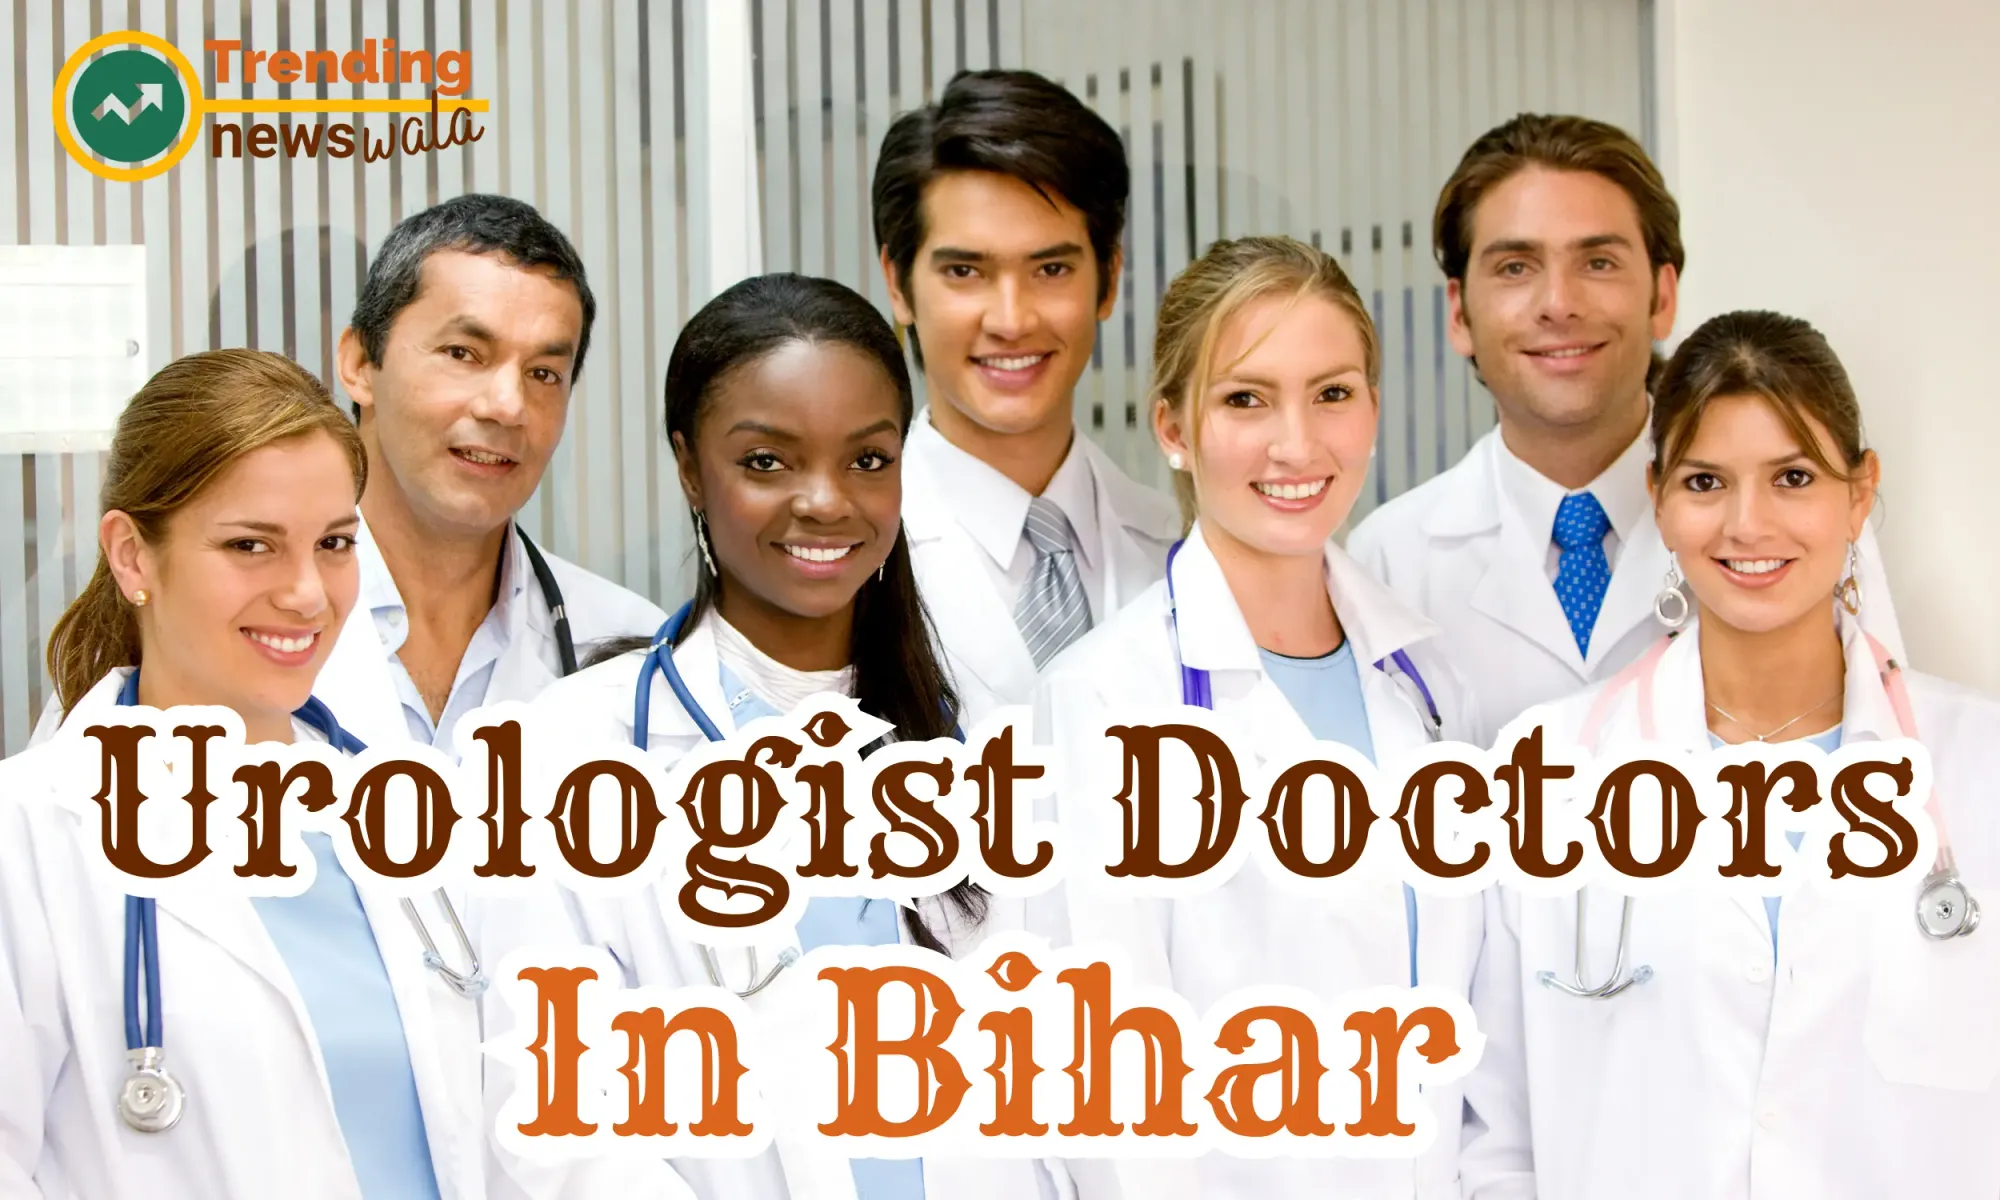 Urologist Doctors In Bihar